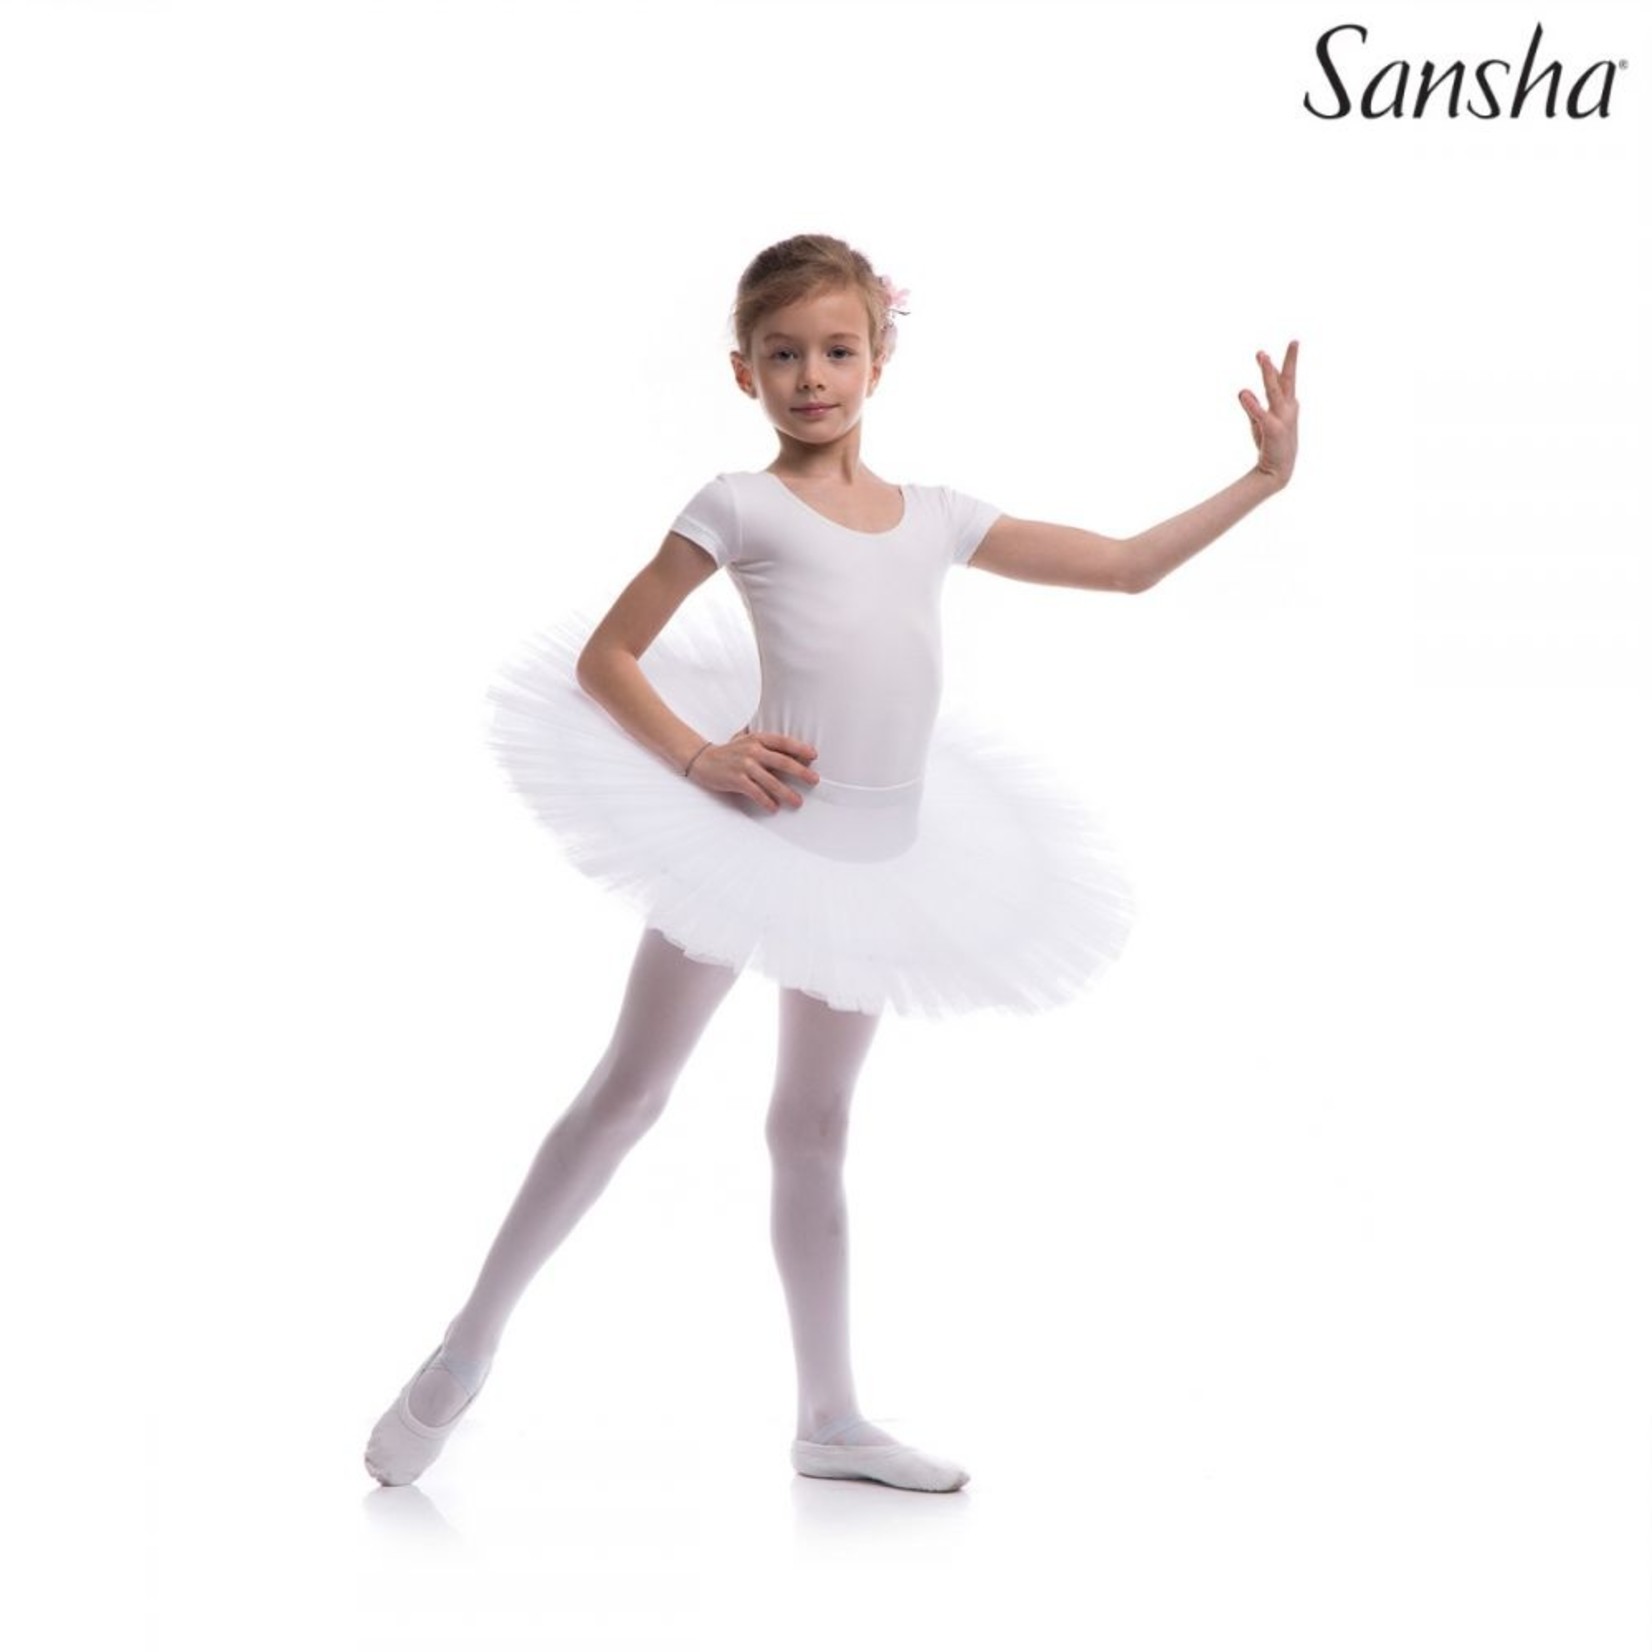 Sansha 68AG0006N Sansha White Tutu Size B - 2/4 XS CHILD